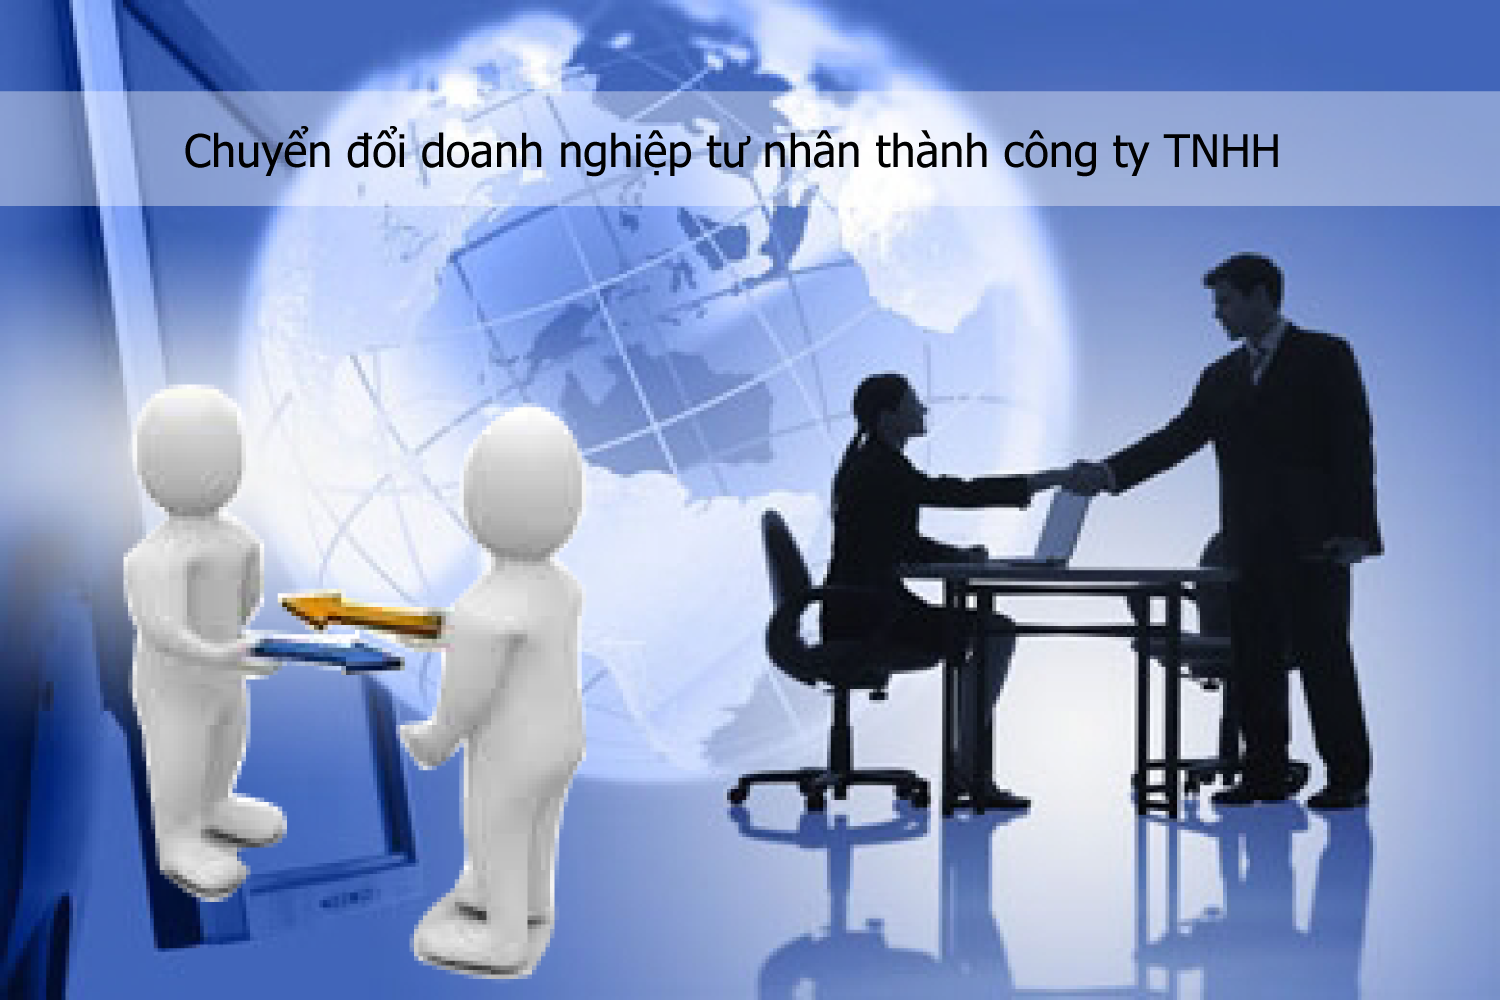 Chuyển đổi doanh nghiệp tư nhân thành công ty TNHH